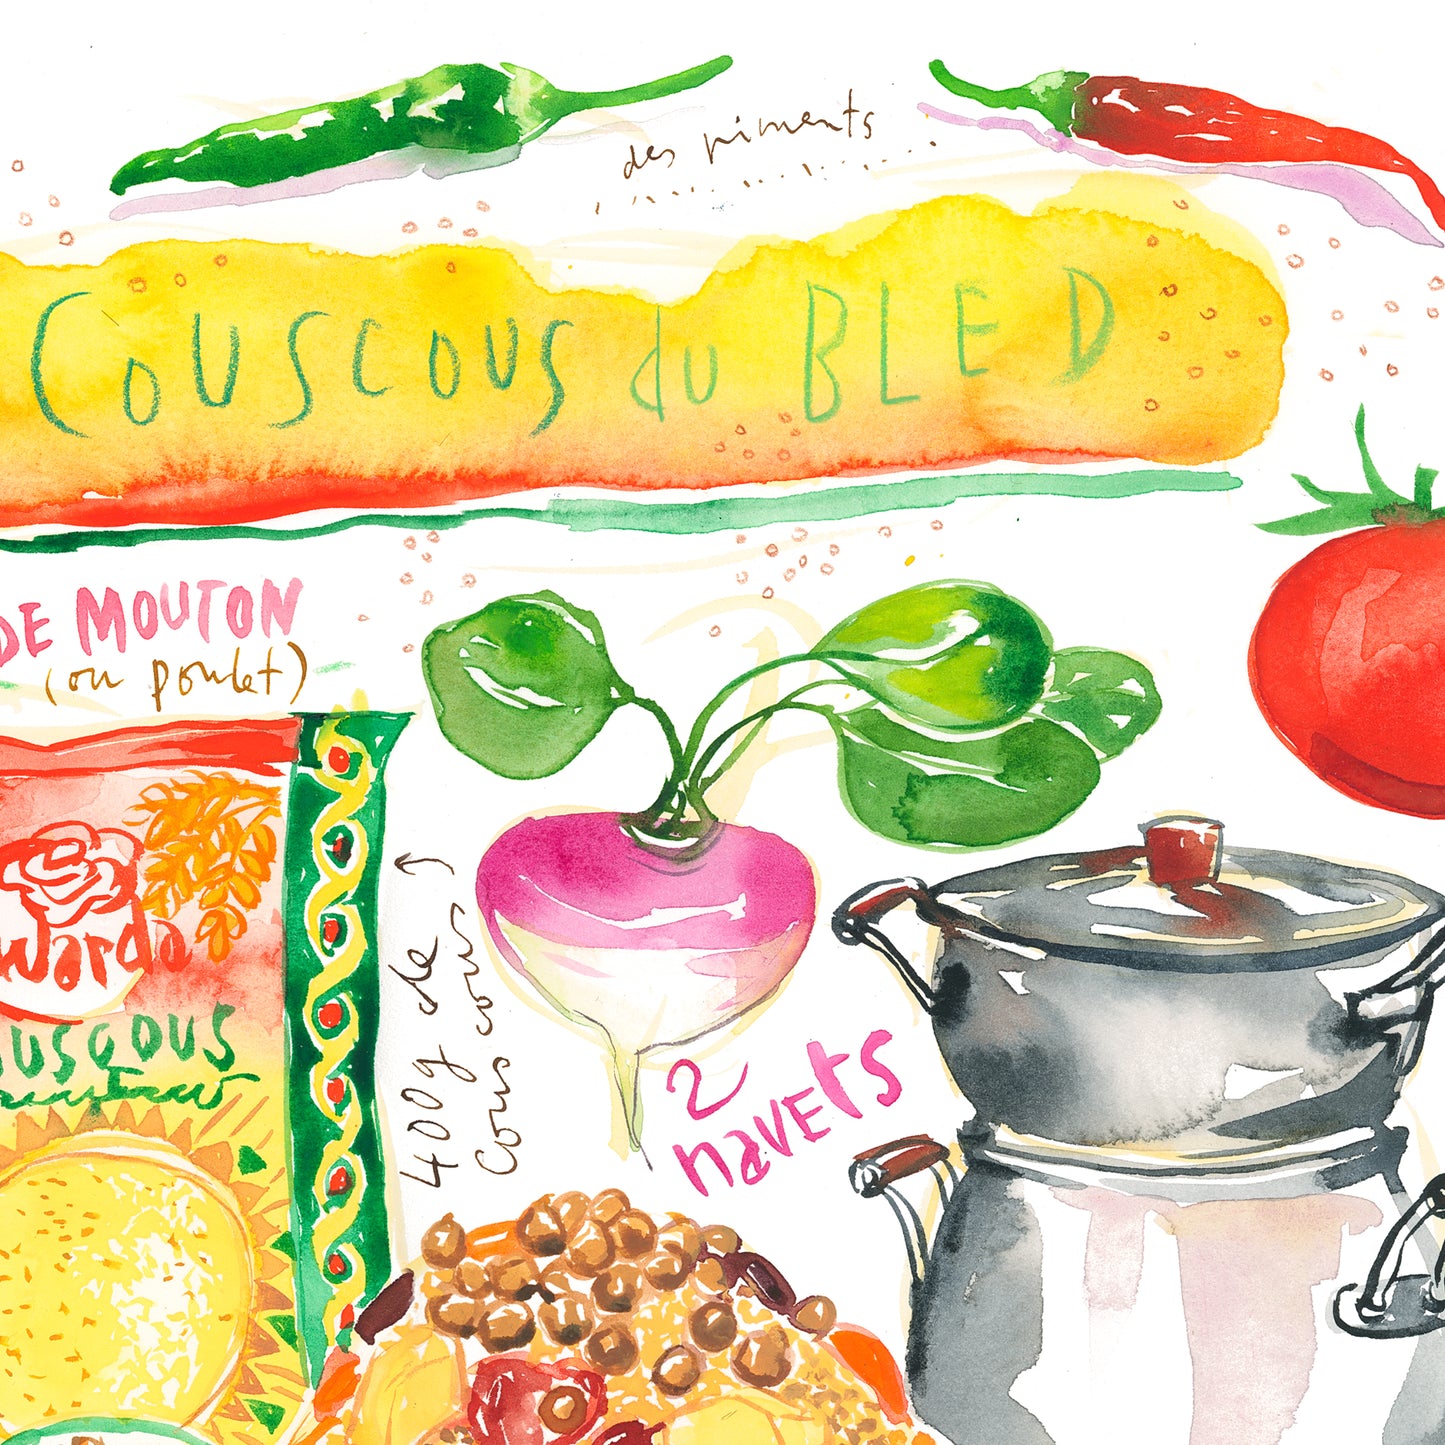 Le Couscous du Bled - Mediterranean couscous recipe